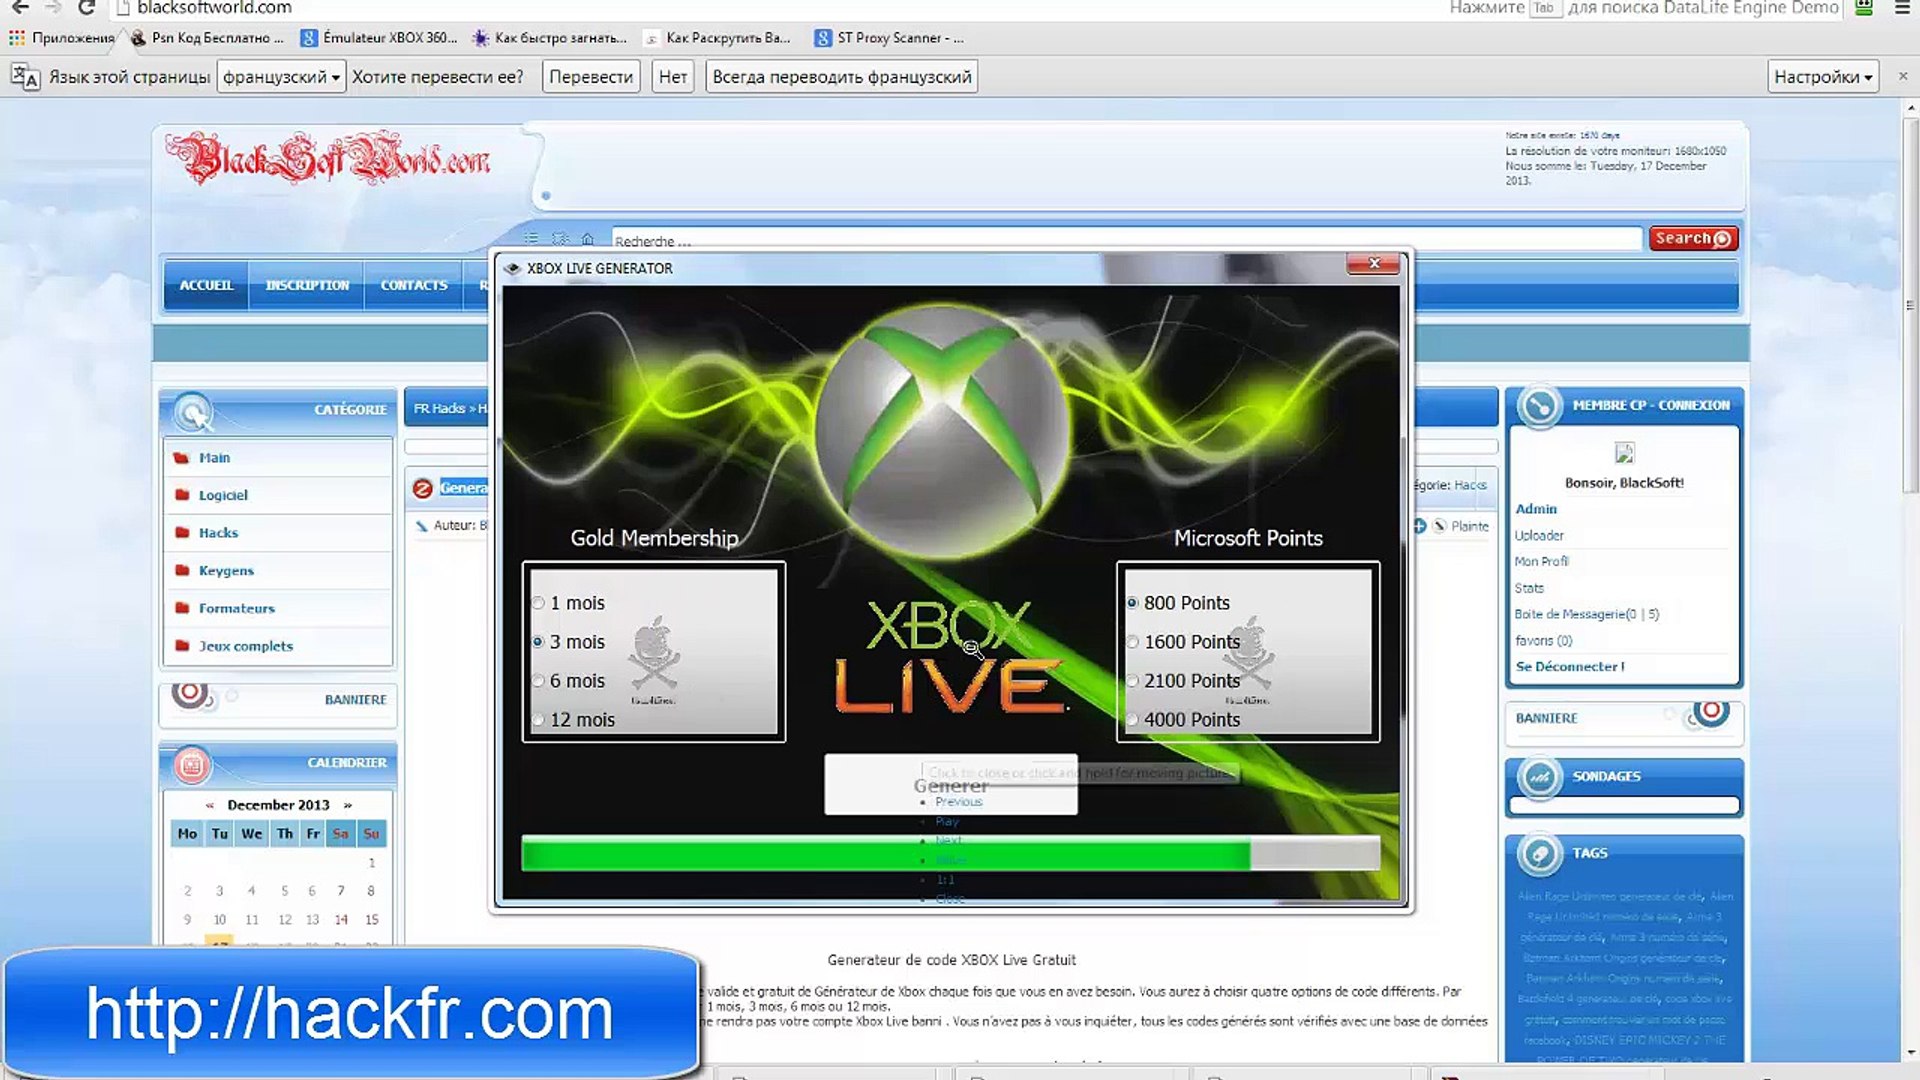 Telecharger generateur de codes Xbox Live Gratuit - video Dailymotion